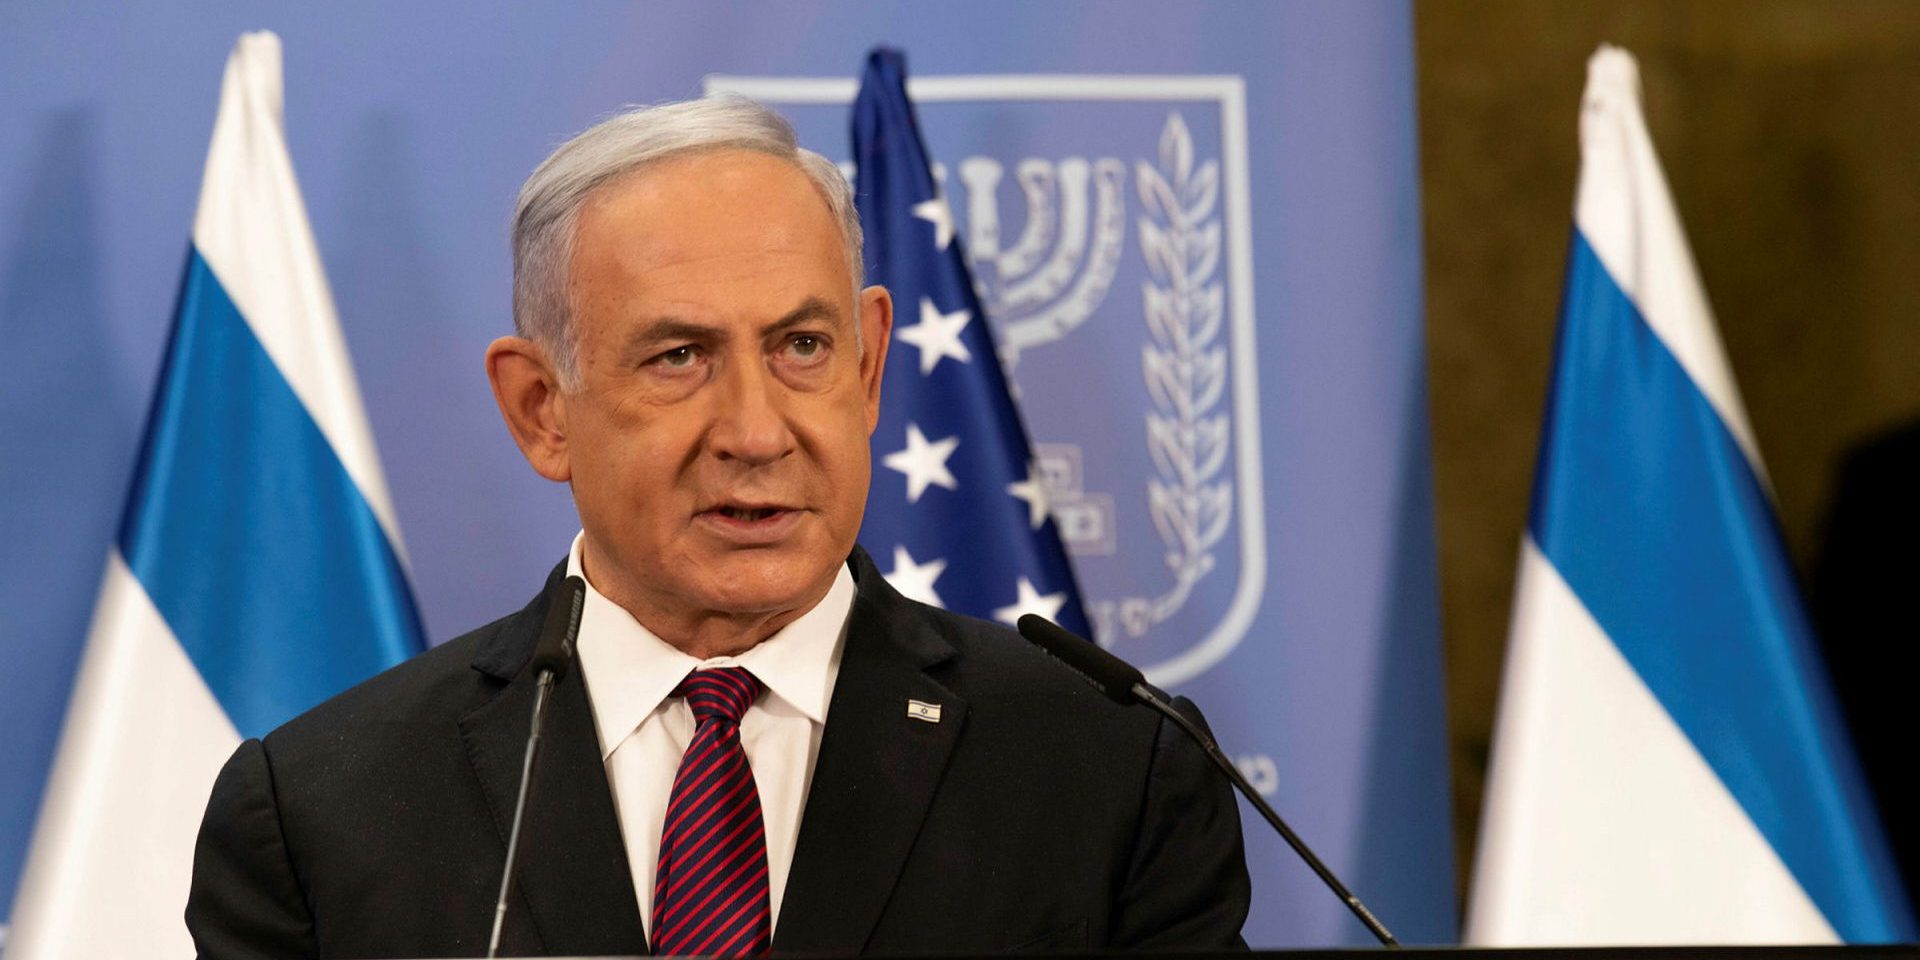 Benjamin Netanyahu. Photograph courtesy of Wikimedia Commons